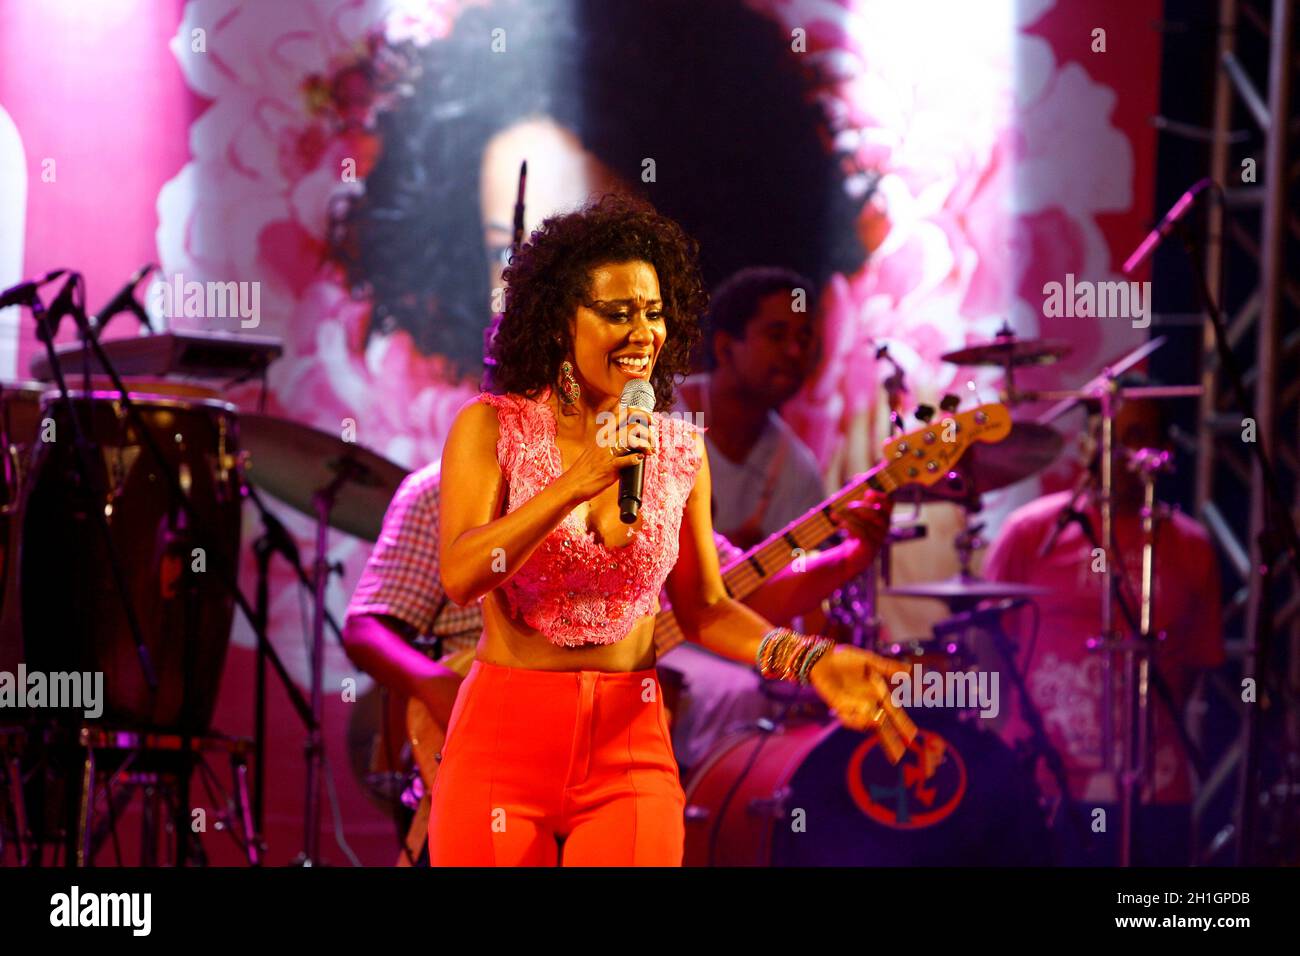 salvador, bahia / brasile - 1 ottobre 2014: La cantante Ana Mametto è visto durante una performance al Parque Costa Azul nella città di Salvador. Foto Stock